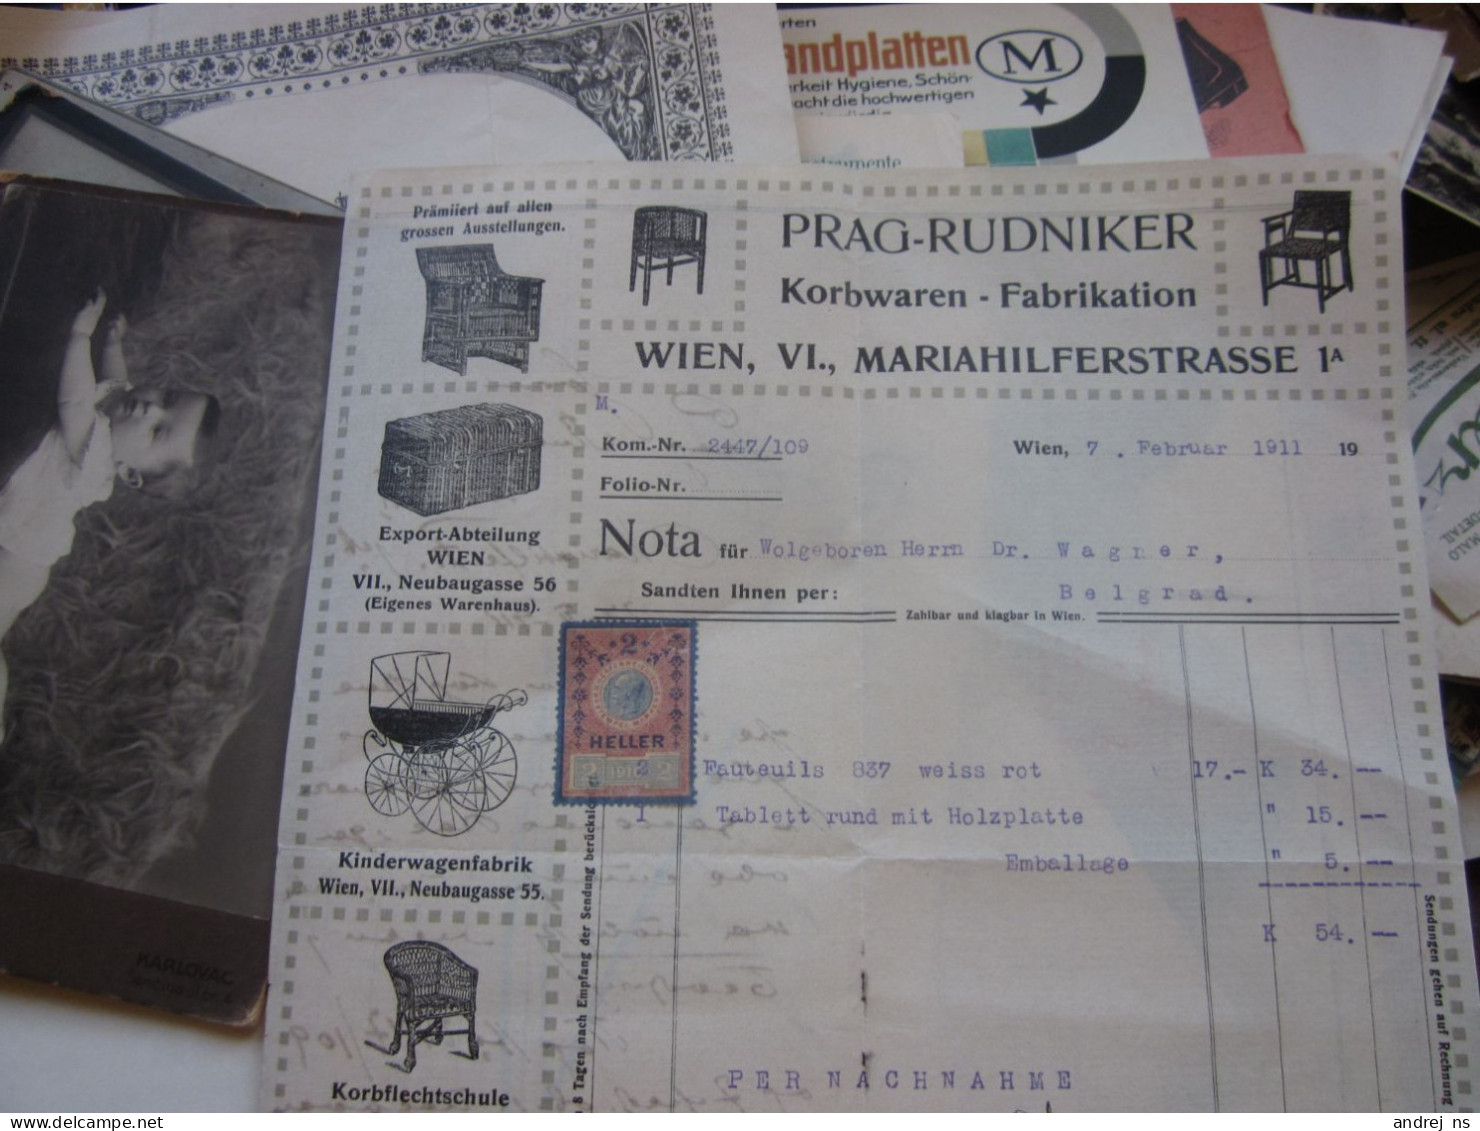 Prag Rudniker Korbwaren Fabrikation Wien 1911 - Austria